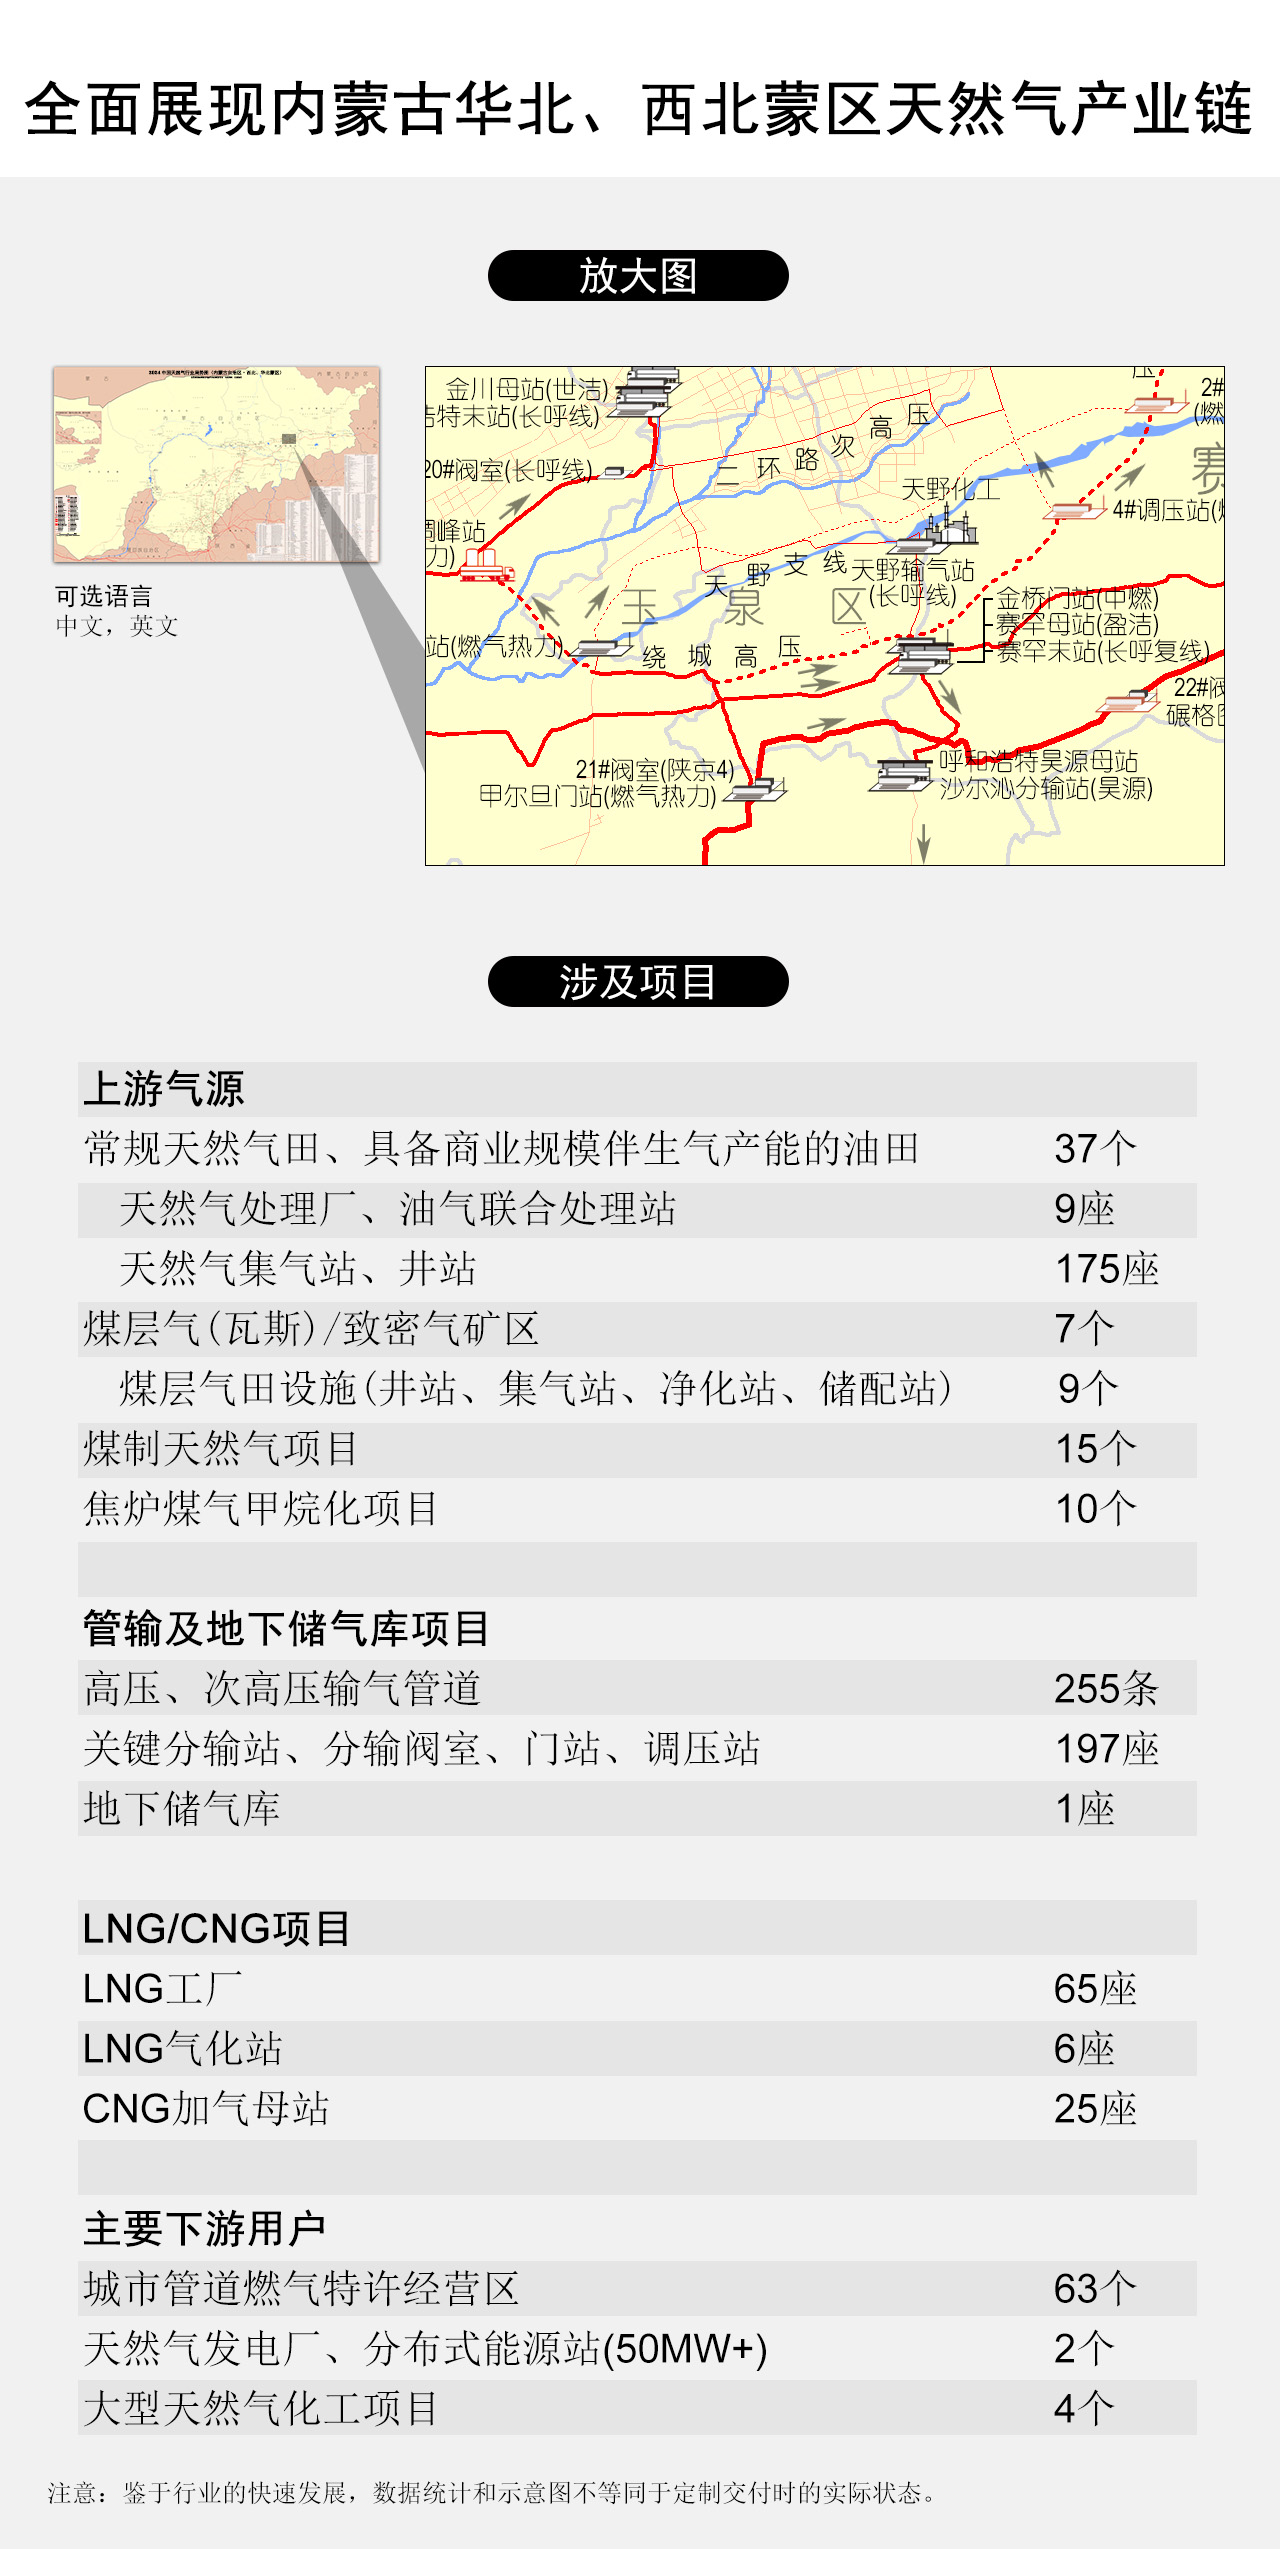 全面展现内蒙古自治区・华北、西北蒙区天然气产业链